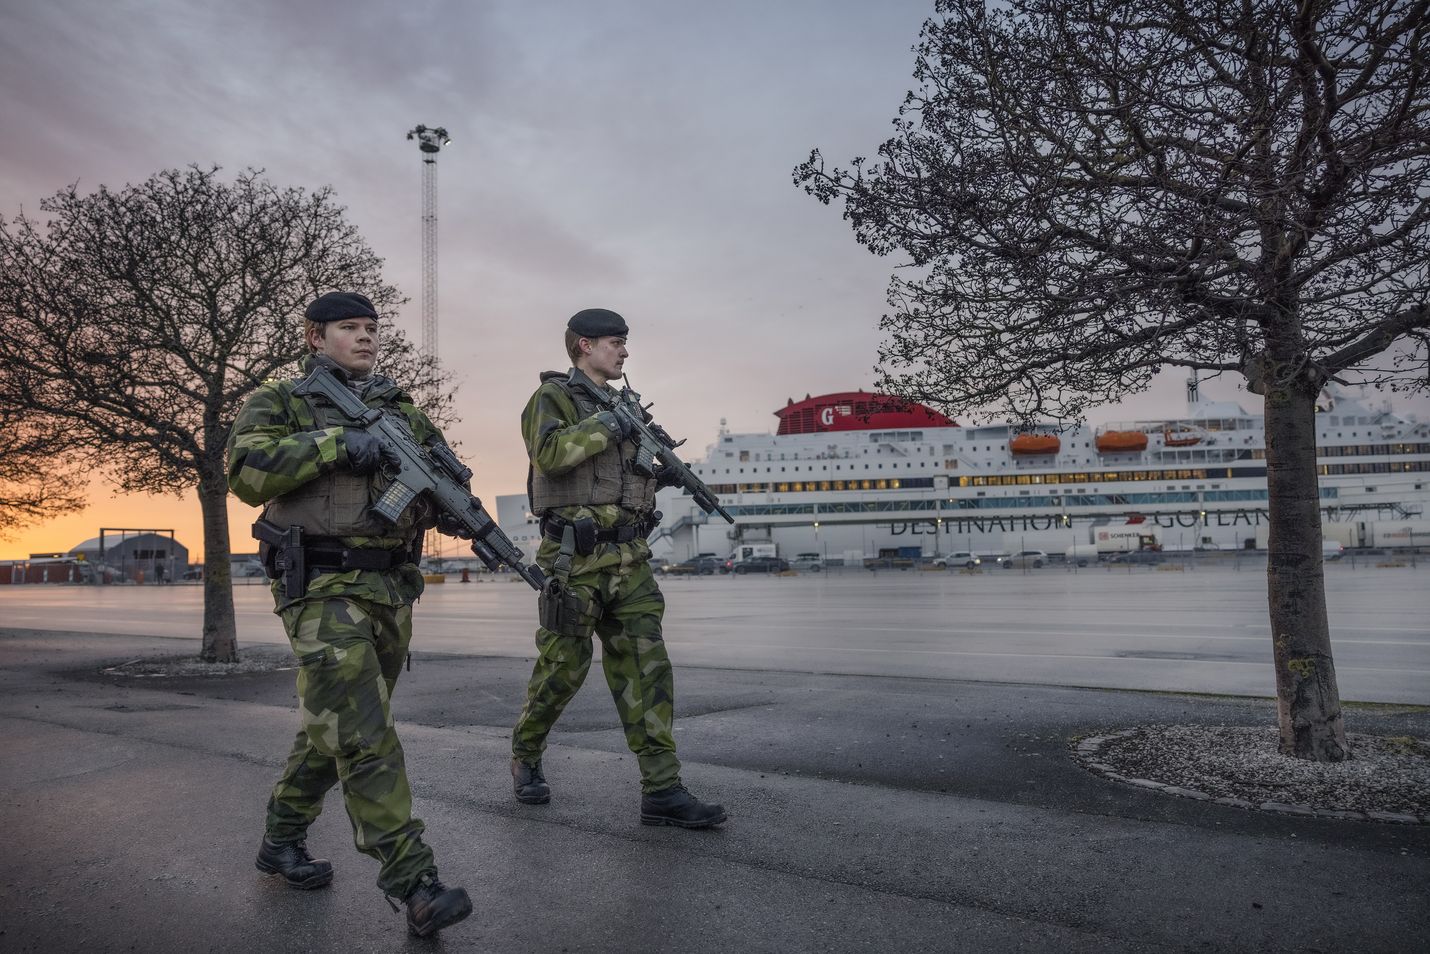 Ruotsalaiset sotilaat partioivat Visbyn satamassa, Gotlannissa. Jopa 100 000 venäläissotilaan keskittäminen Ukrainan rajalle sai tällä viikolla Ruotsin lisäämään sotilaallista toimintaansa Itämerellä.